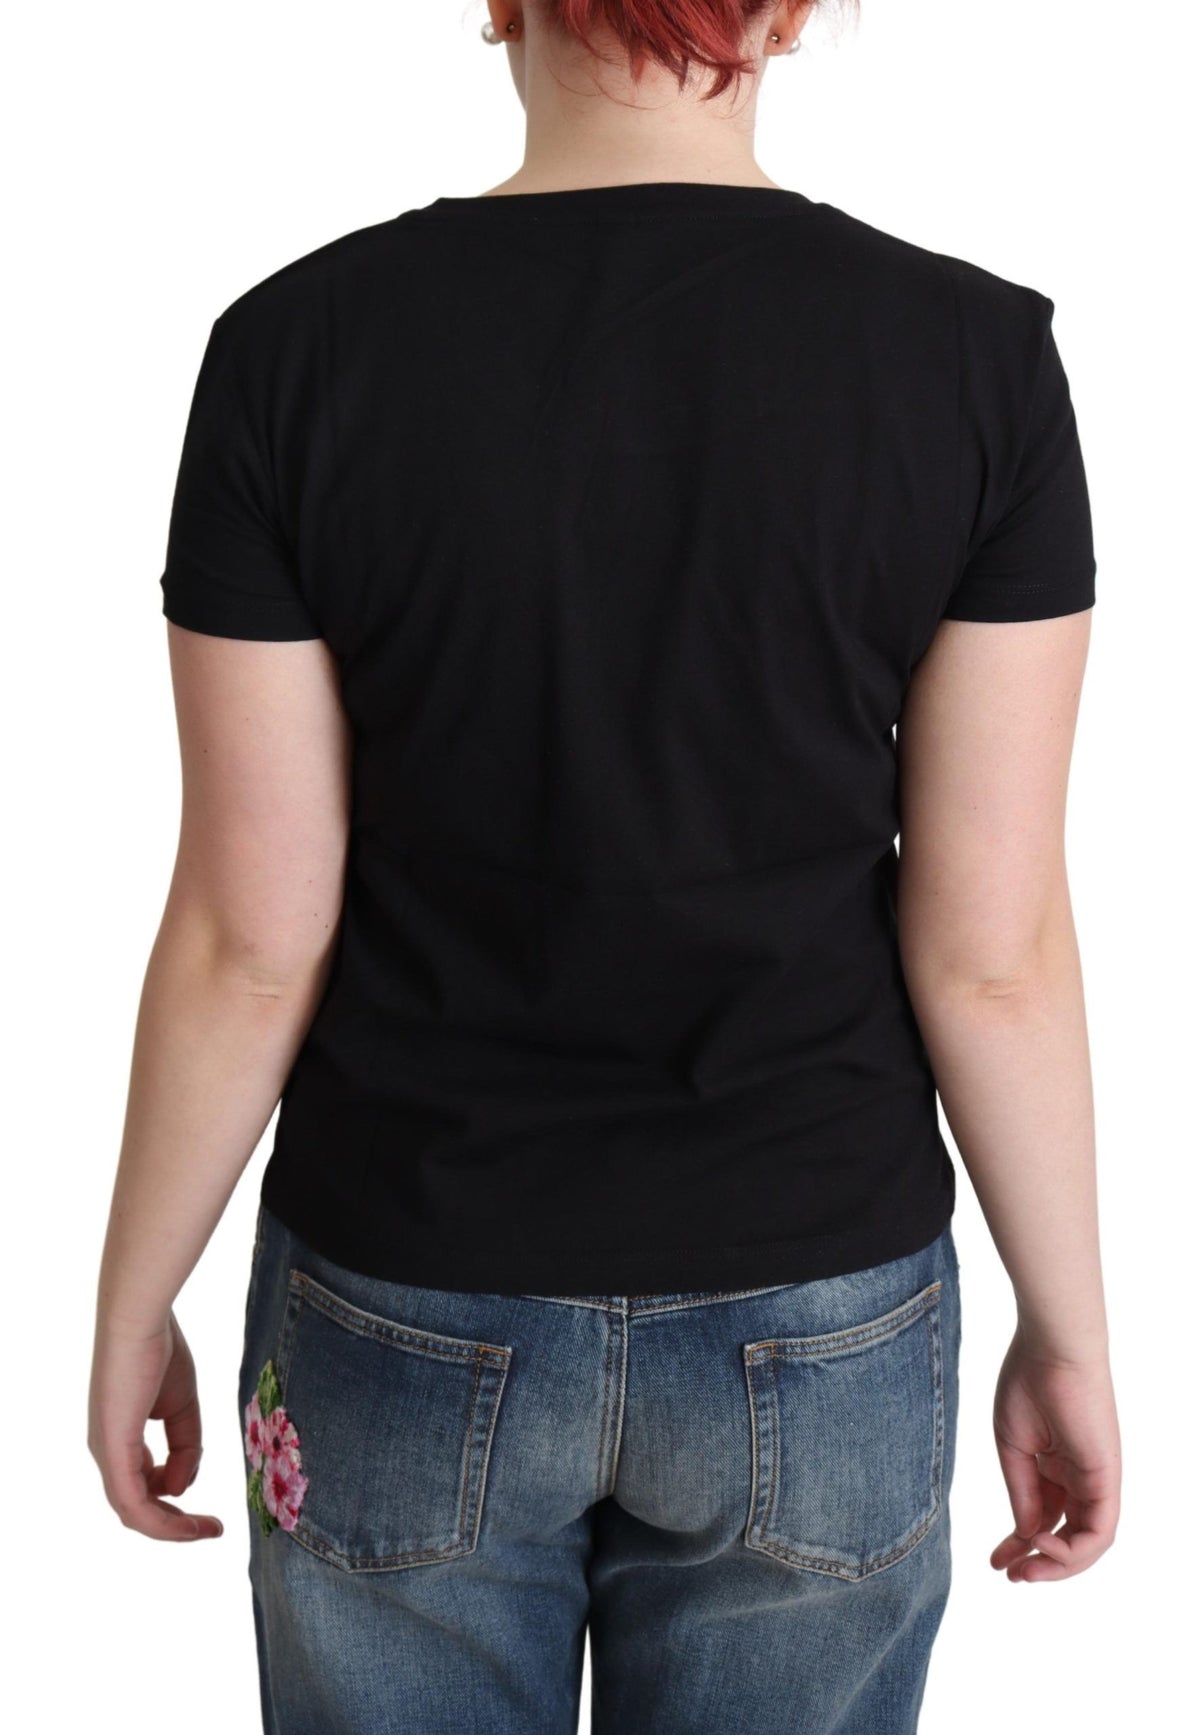 Moschino Chic – Schwarzes Baumwoll-T-Shirt mit verspieltem Aufdruck